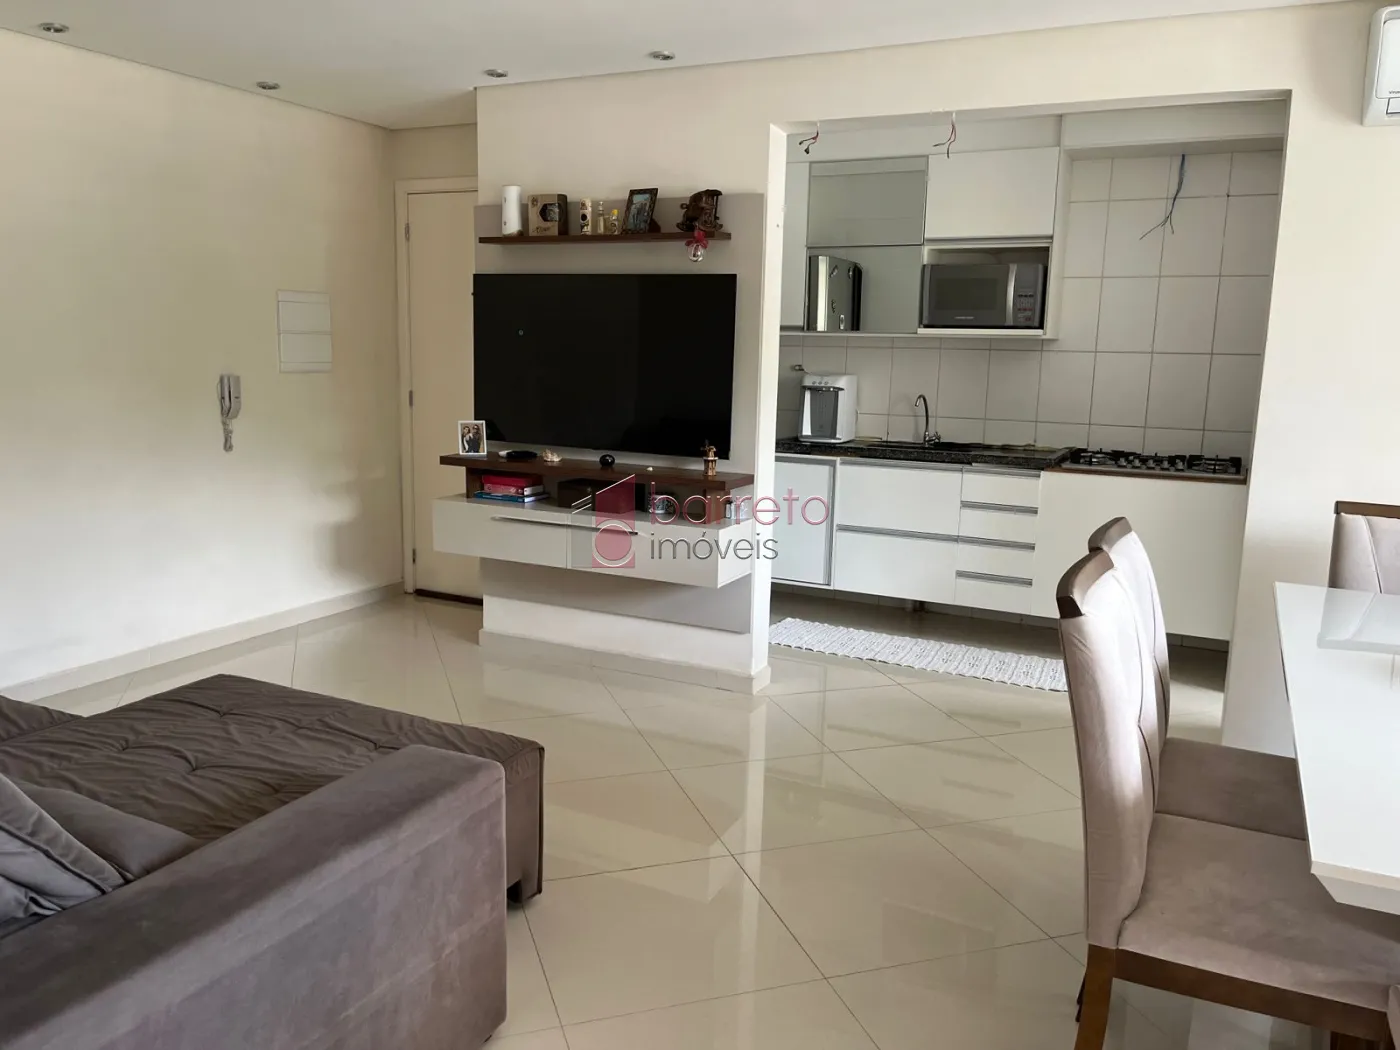 Comprar Apartamento / Padrão em Jundiaí R$ 430.000,00 - Foto 5